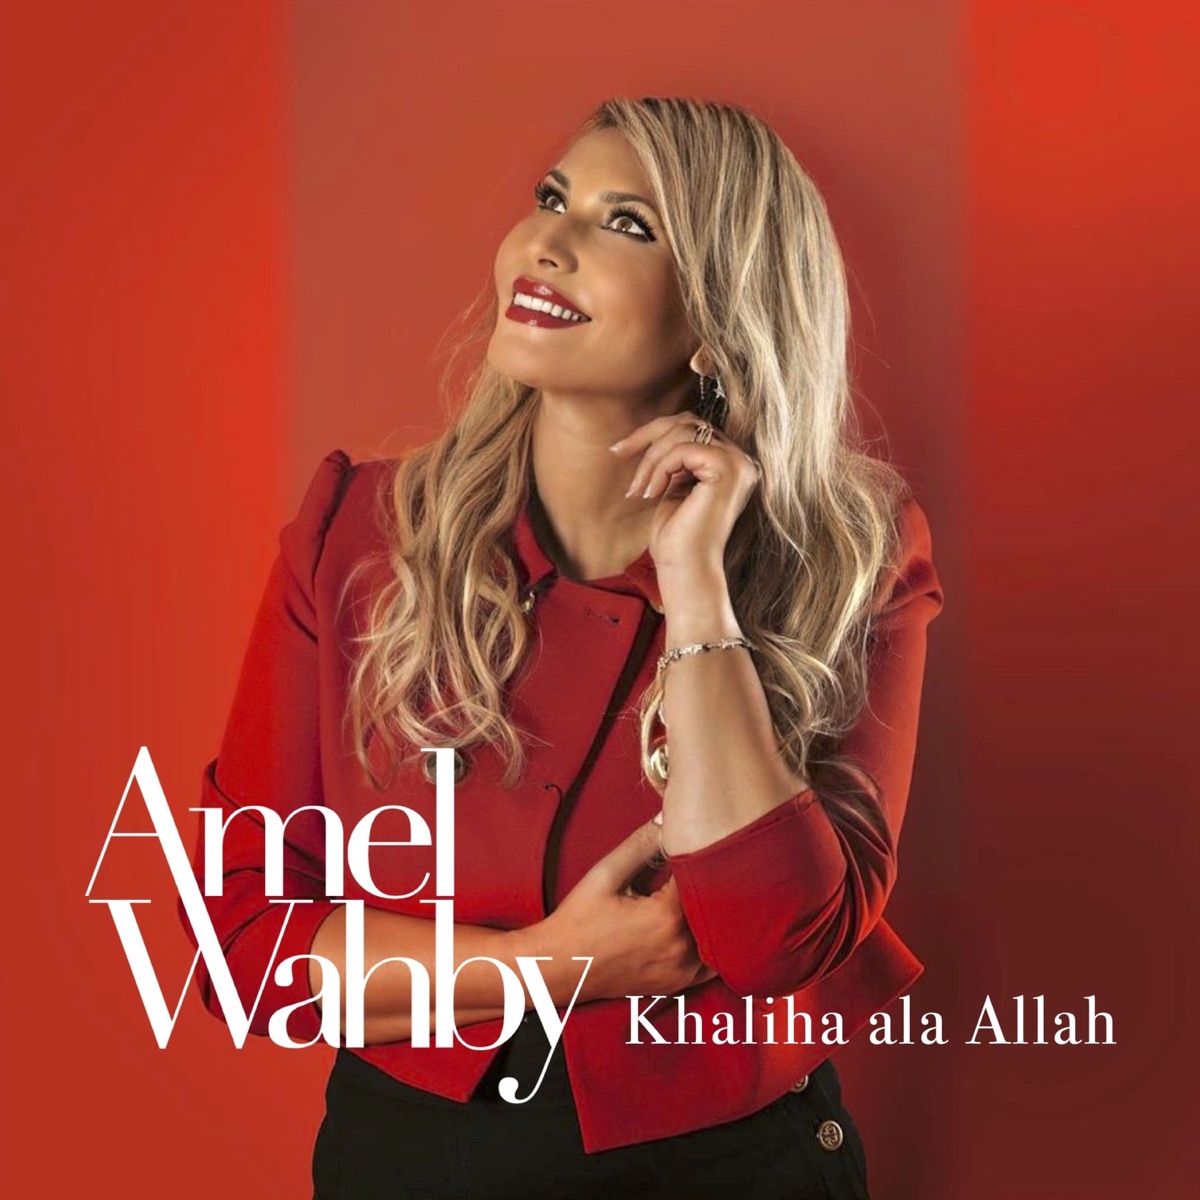 Sana Helwa Ya Gamil - Single – Album par Amel Wahby – Apple Music